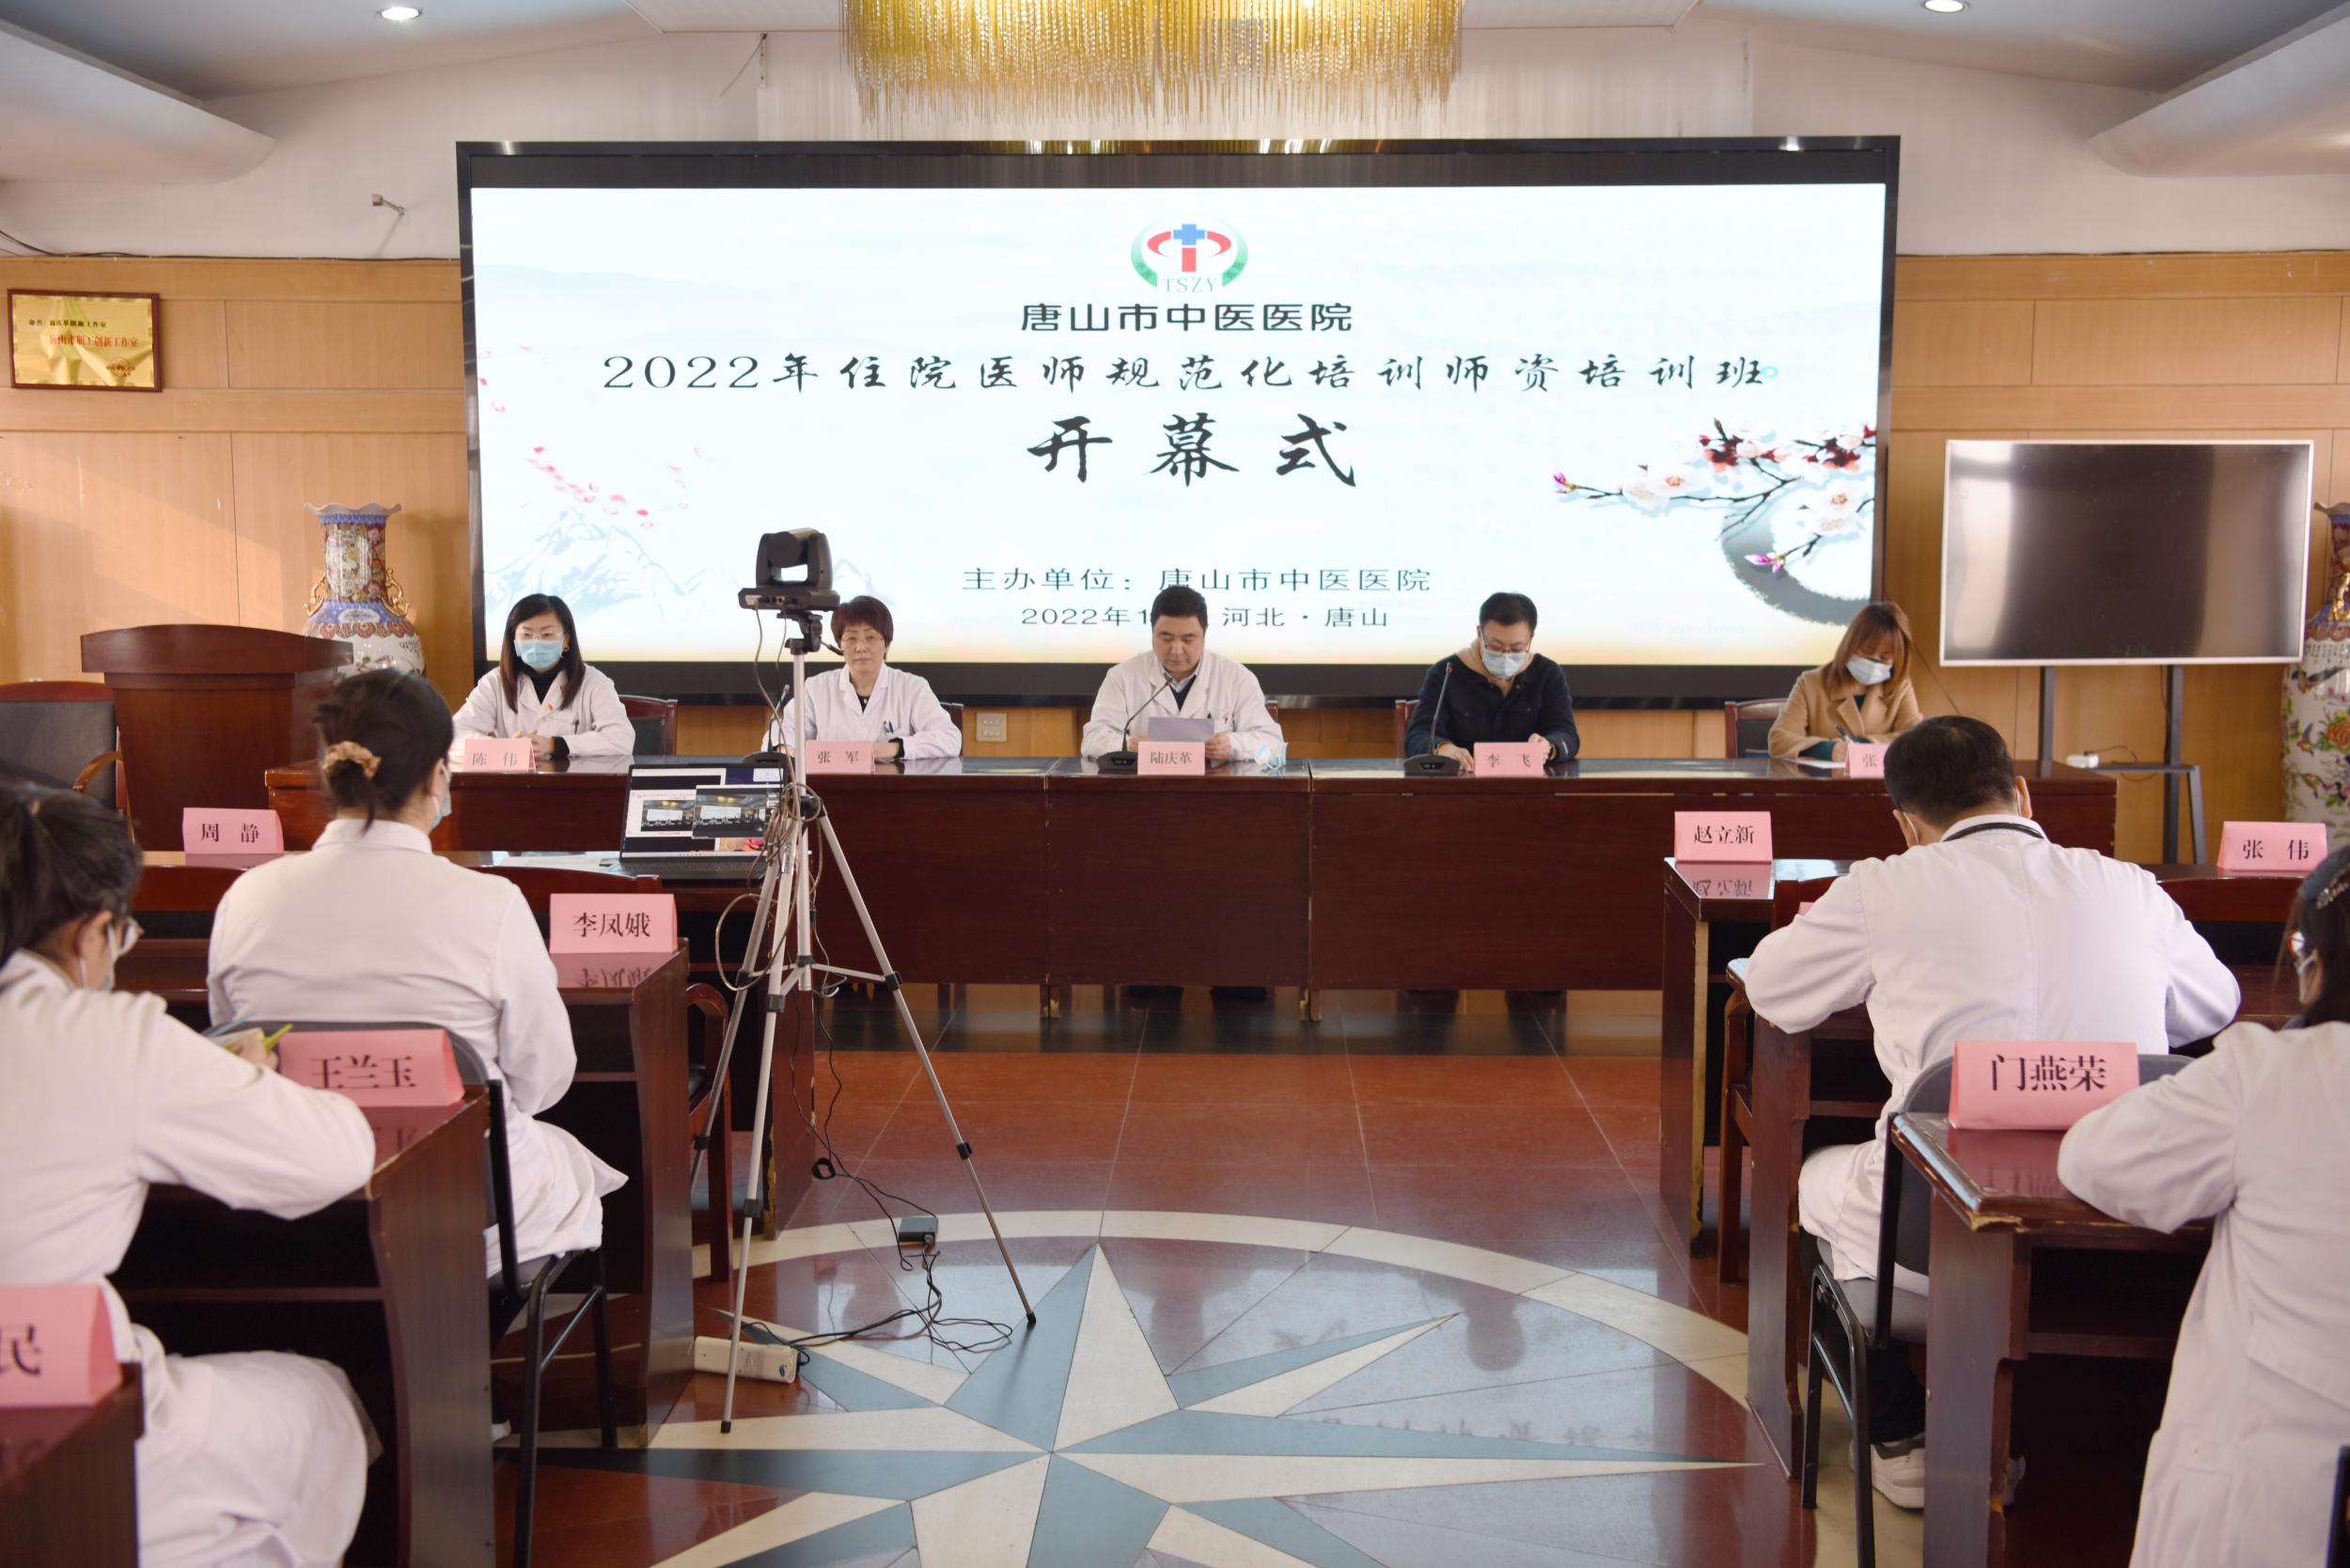 唐山市中医医院举办“中医医师规范化培训院级师资培训班”